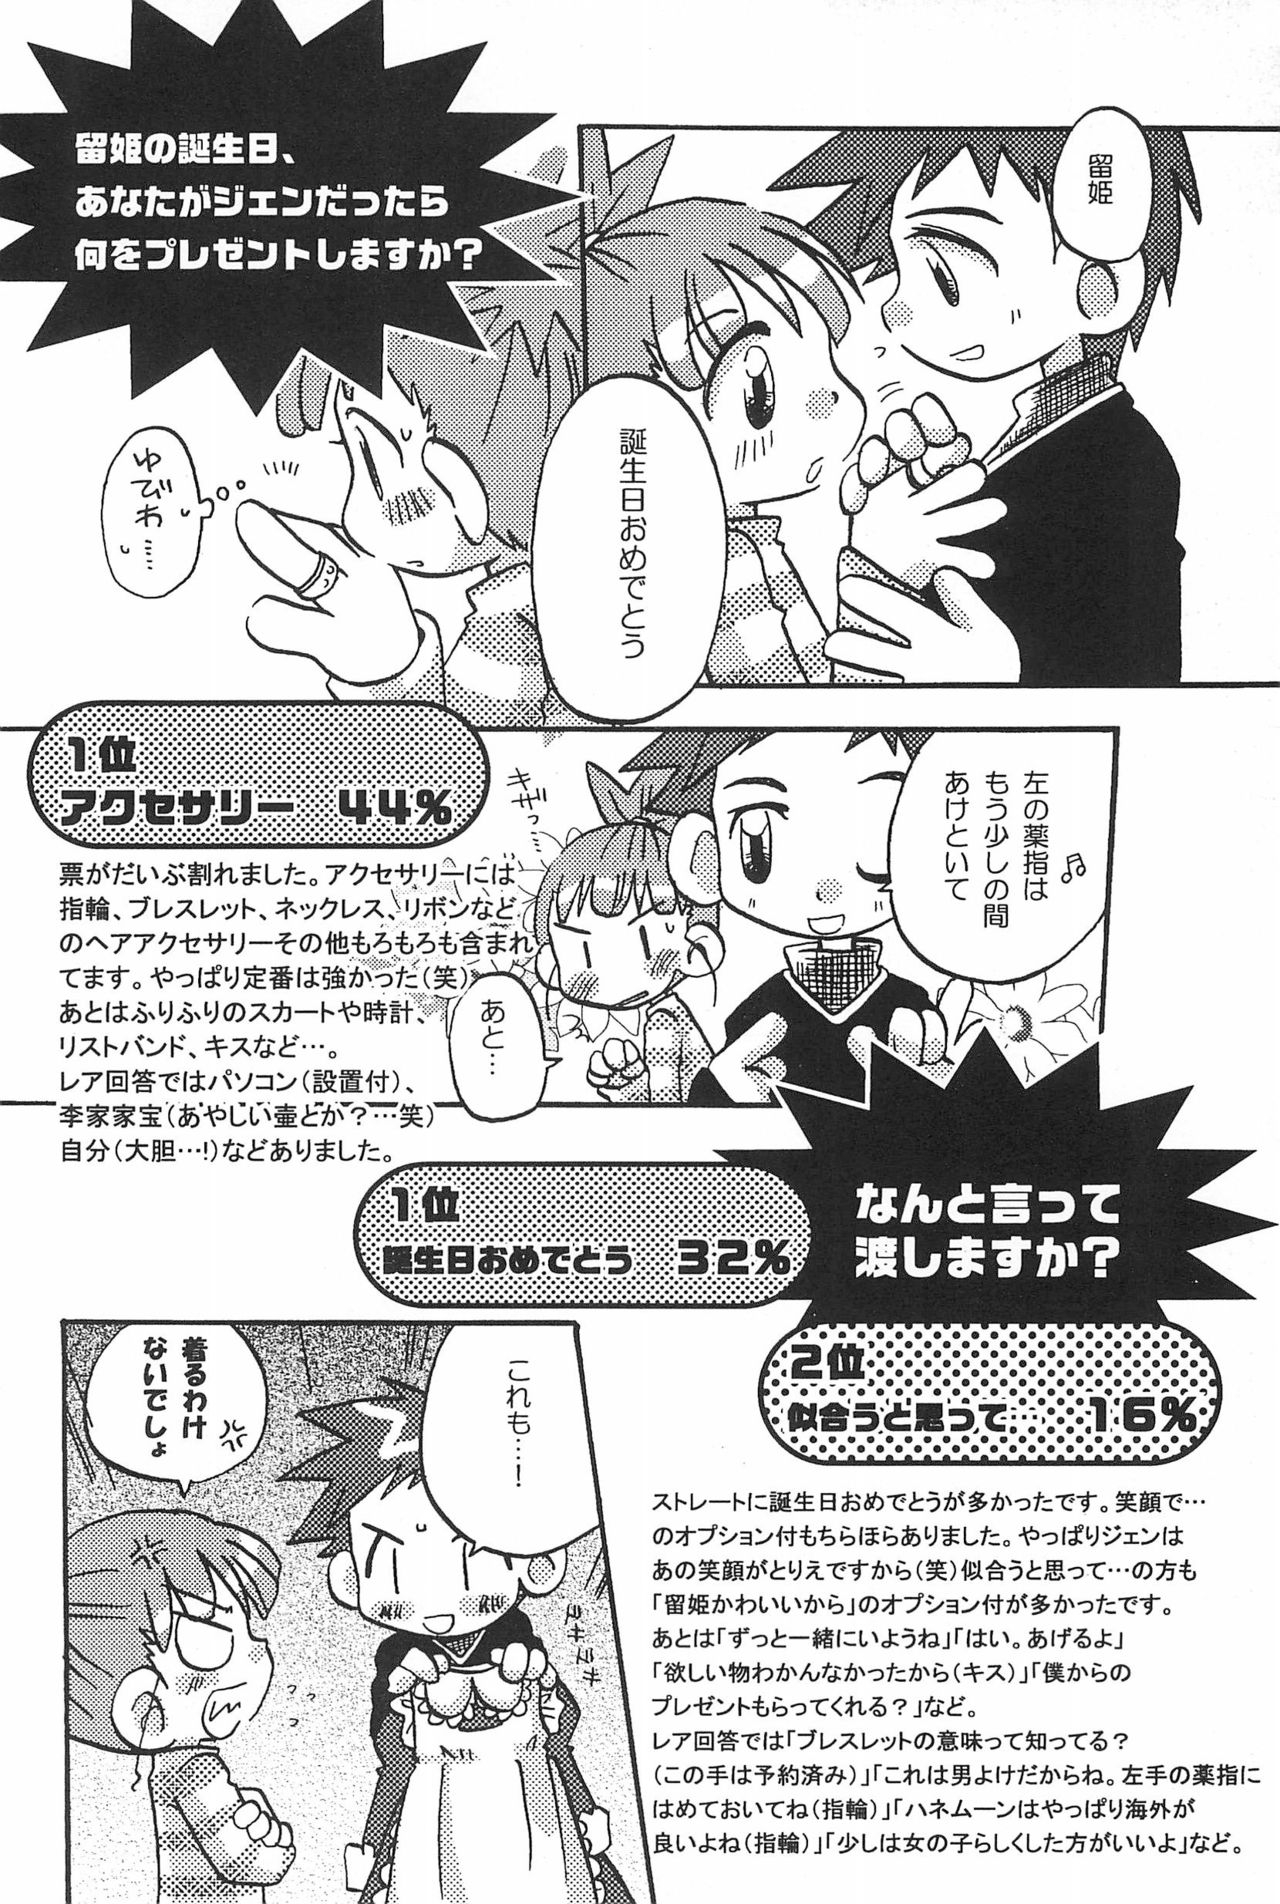 (SC15) [LeeRuki Anthology Jikkou Iinkai (Various)] LeeRuki Anthology J&R REPORT (Digimon Tamers) 45